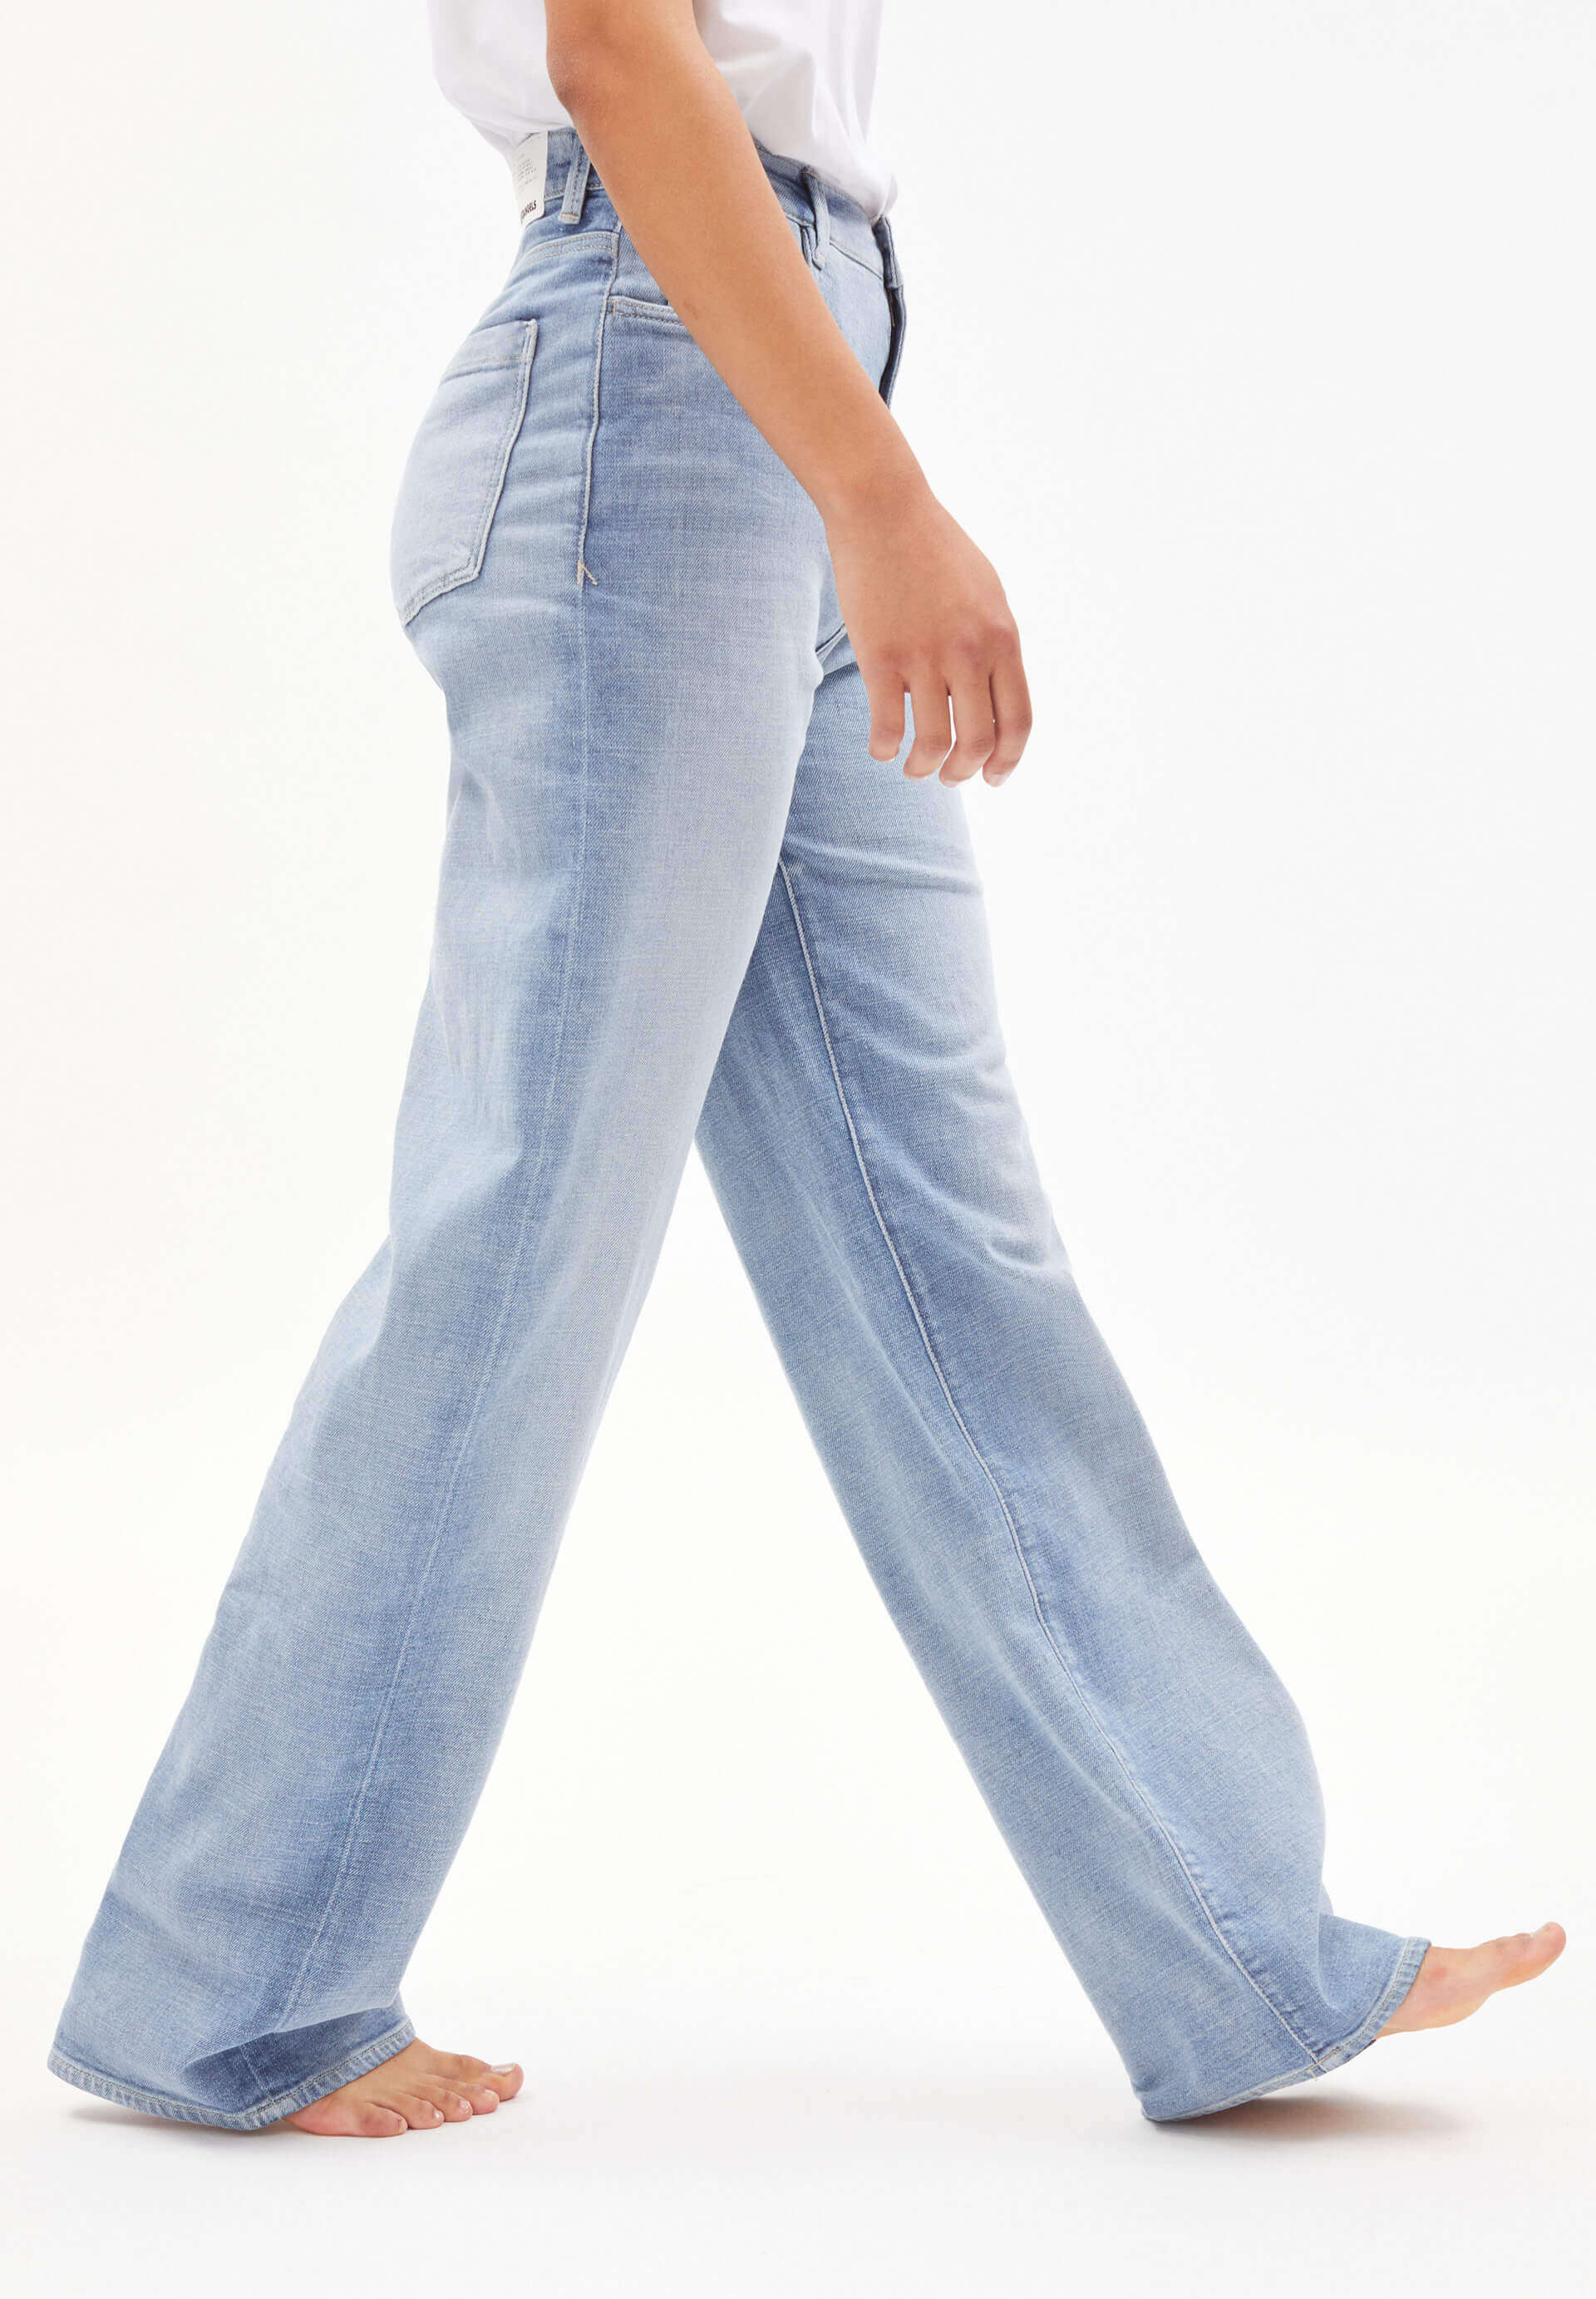 ARMEDANGELS Jeans Enijaa Hemp Wide Leg mineral blue 25/32